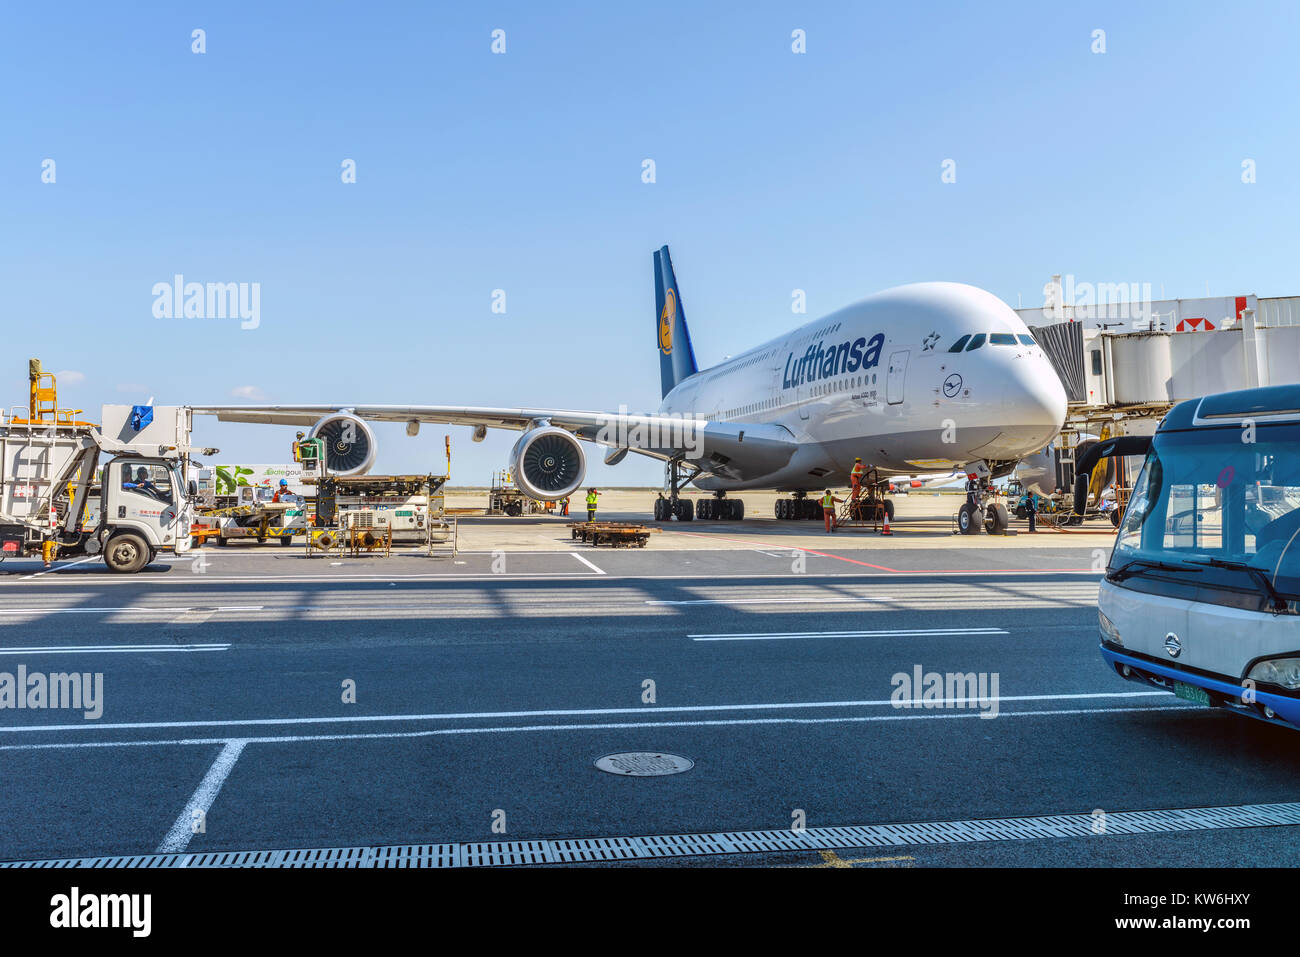 Machen Sie sich bereit zu fliegen - in Shanghai Pudong International Airport, die Techniker sind Vorbereitungen der Lufthansa Fluggesellschaft Airbus A380-800 für die anderen fliegen. Stockfoto